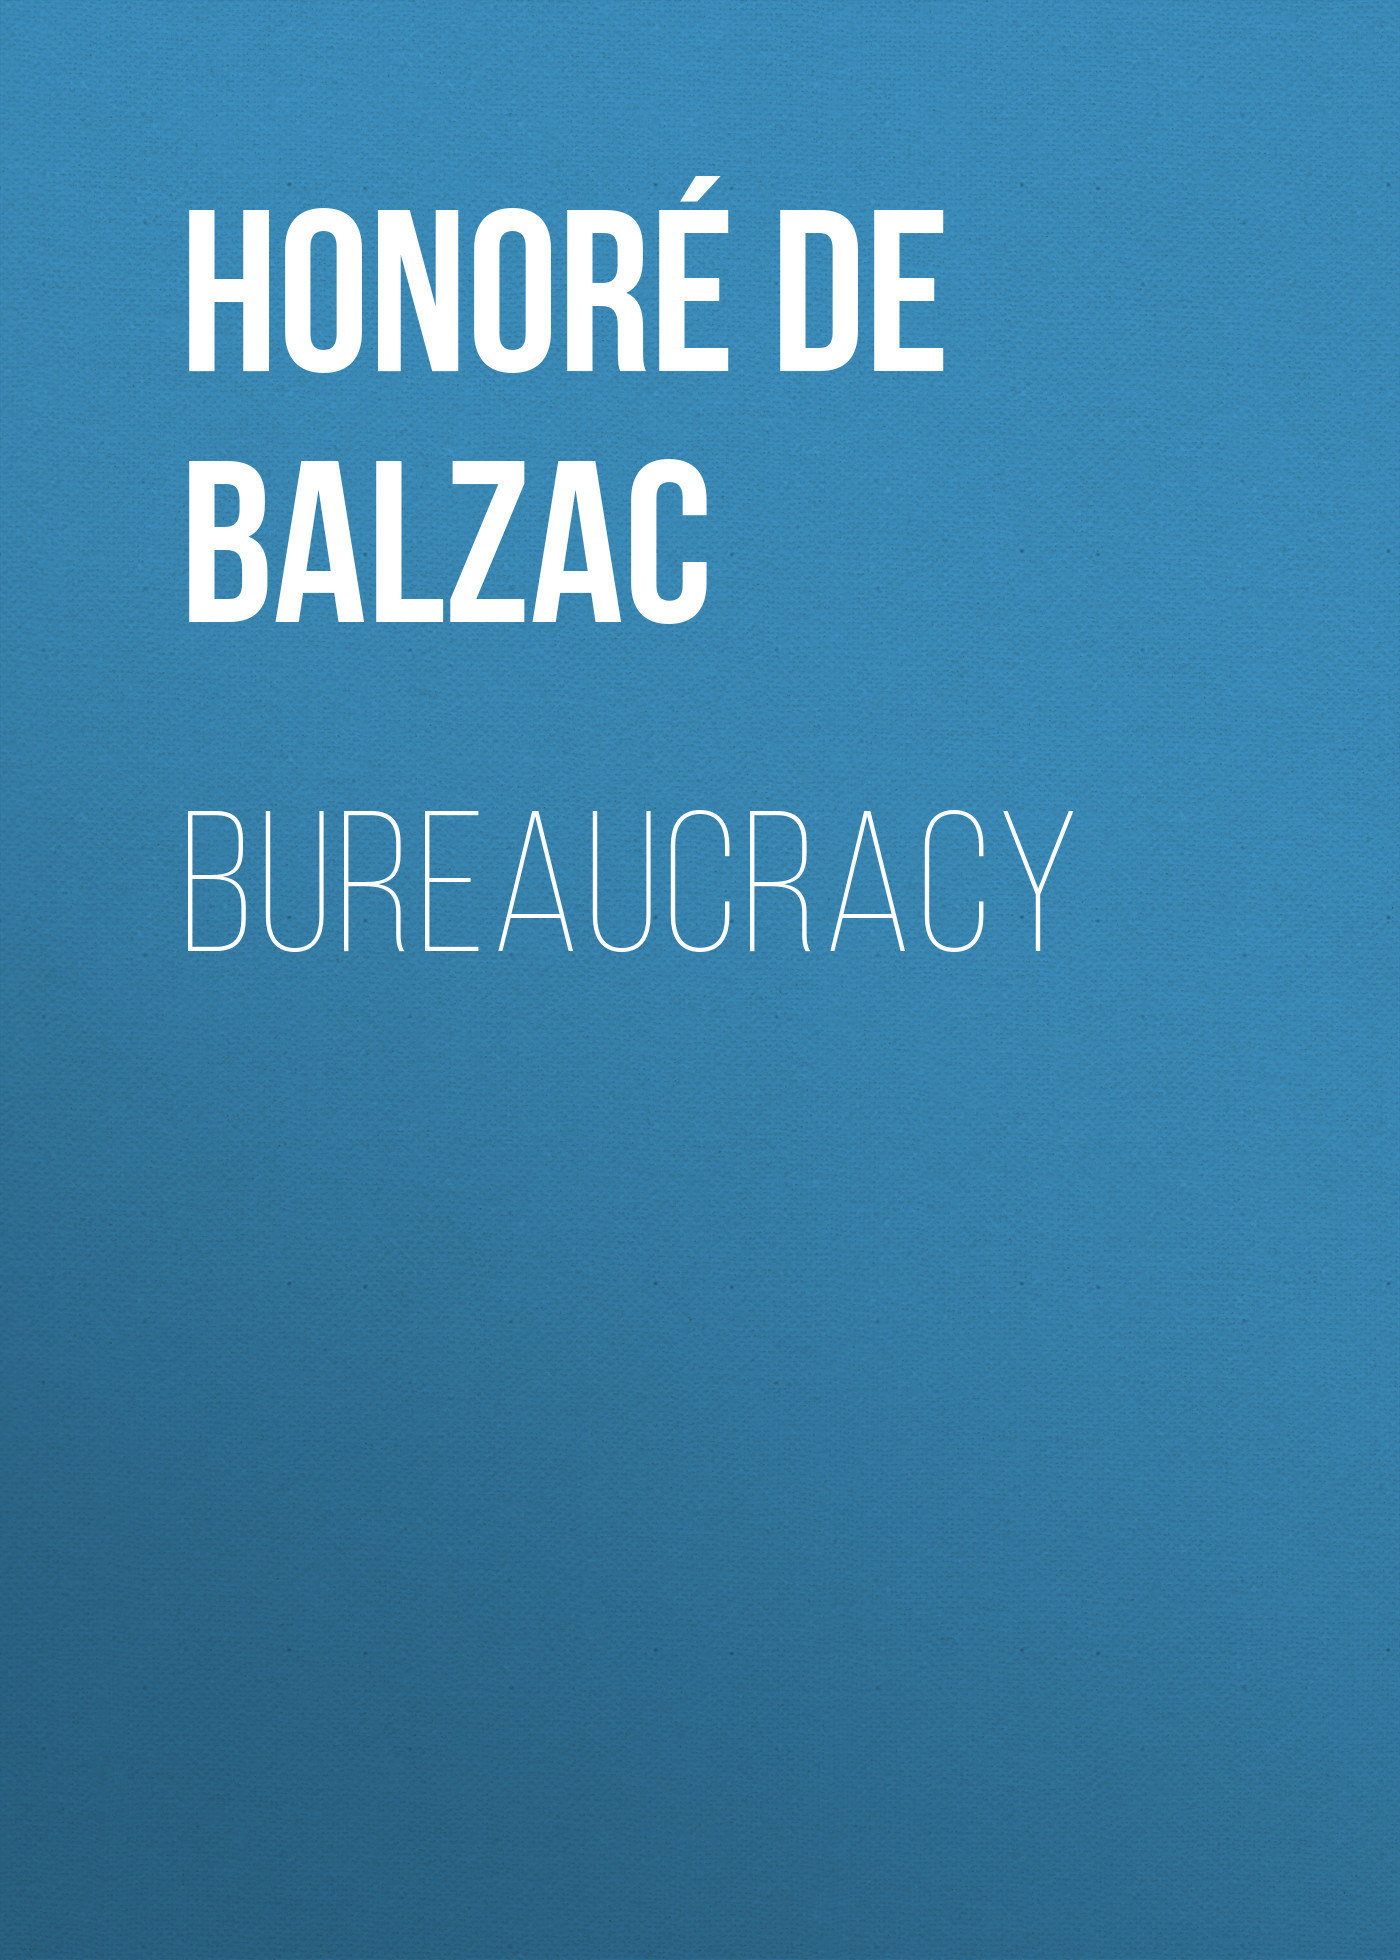 Книга Bureaucracy из серии , созданная Honoré Balzac, может относится к жанру Литература 19 века, Зарубежная старинная литература, Зарубежная классика. Стоимость электронной книги Bureaucracy с идентификатором 25020971 составляет 0 руб.